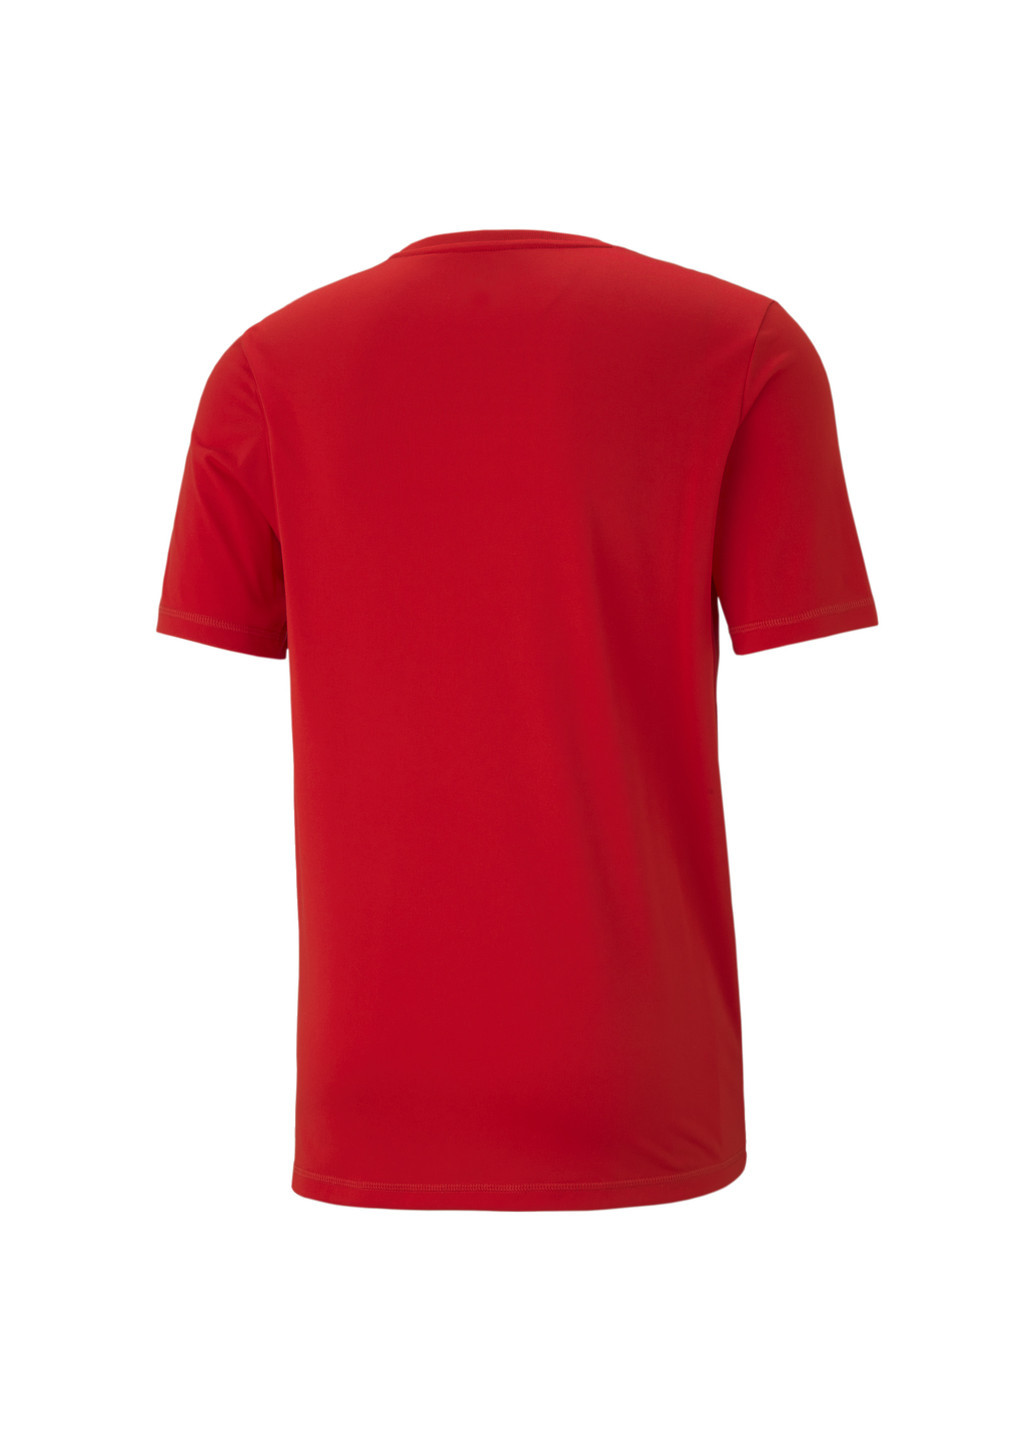 Красная футболка active big logo men’s tee Puma